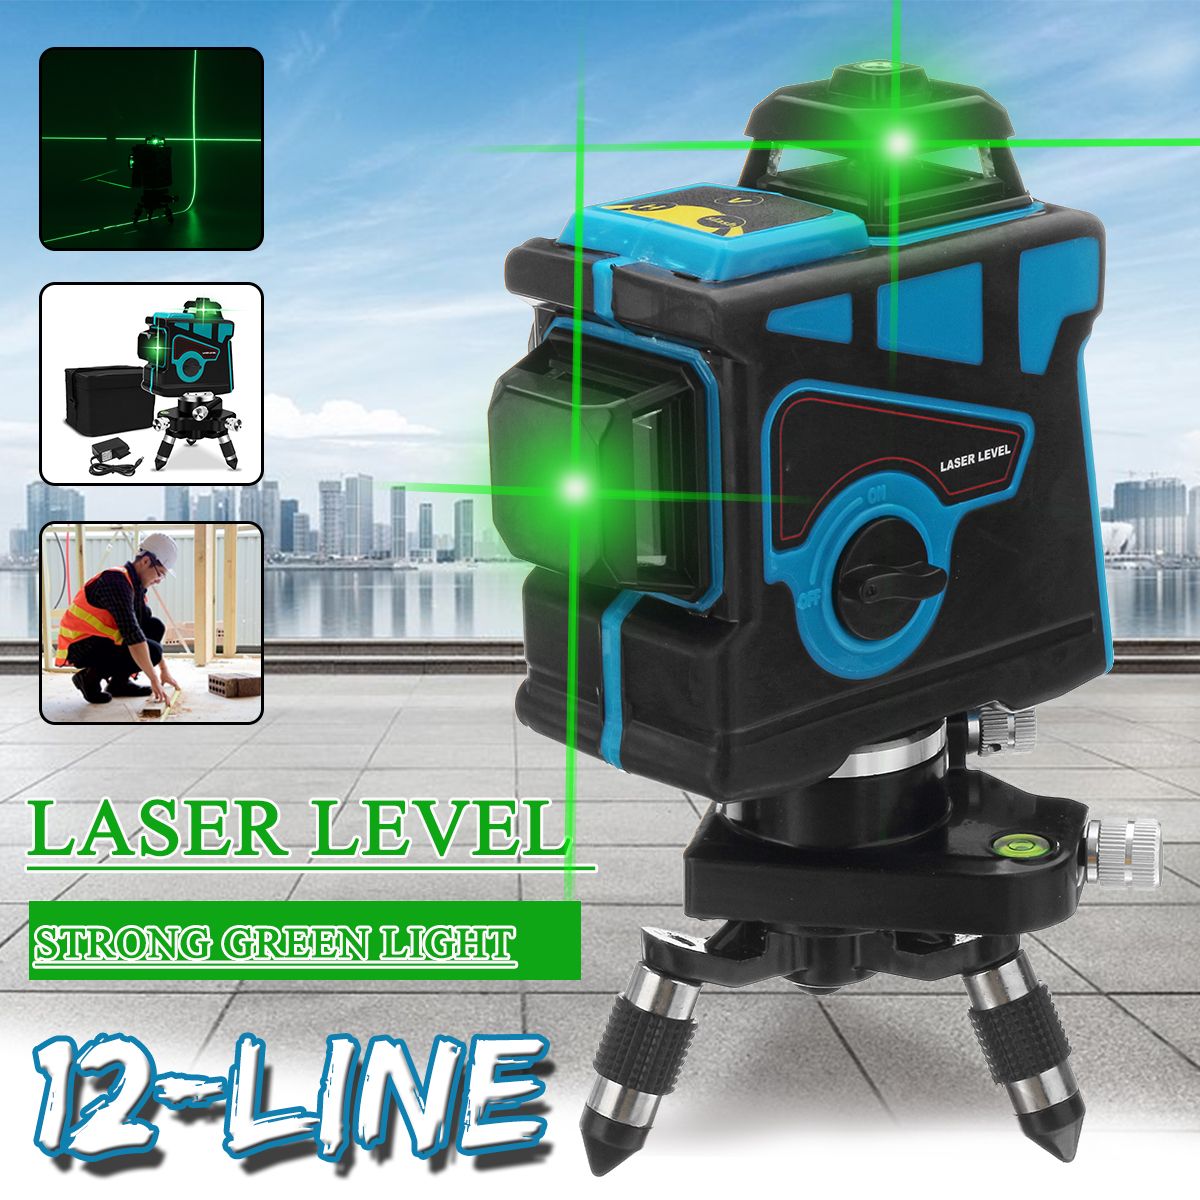 AU-12-Lines-360degC-Waterproof-Self-Leveling-Green-3D-Laser-Level-Outdoor-Measure-Laser-Distance-Met-1468216